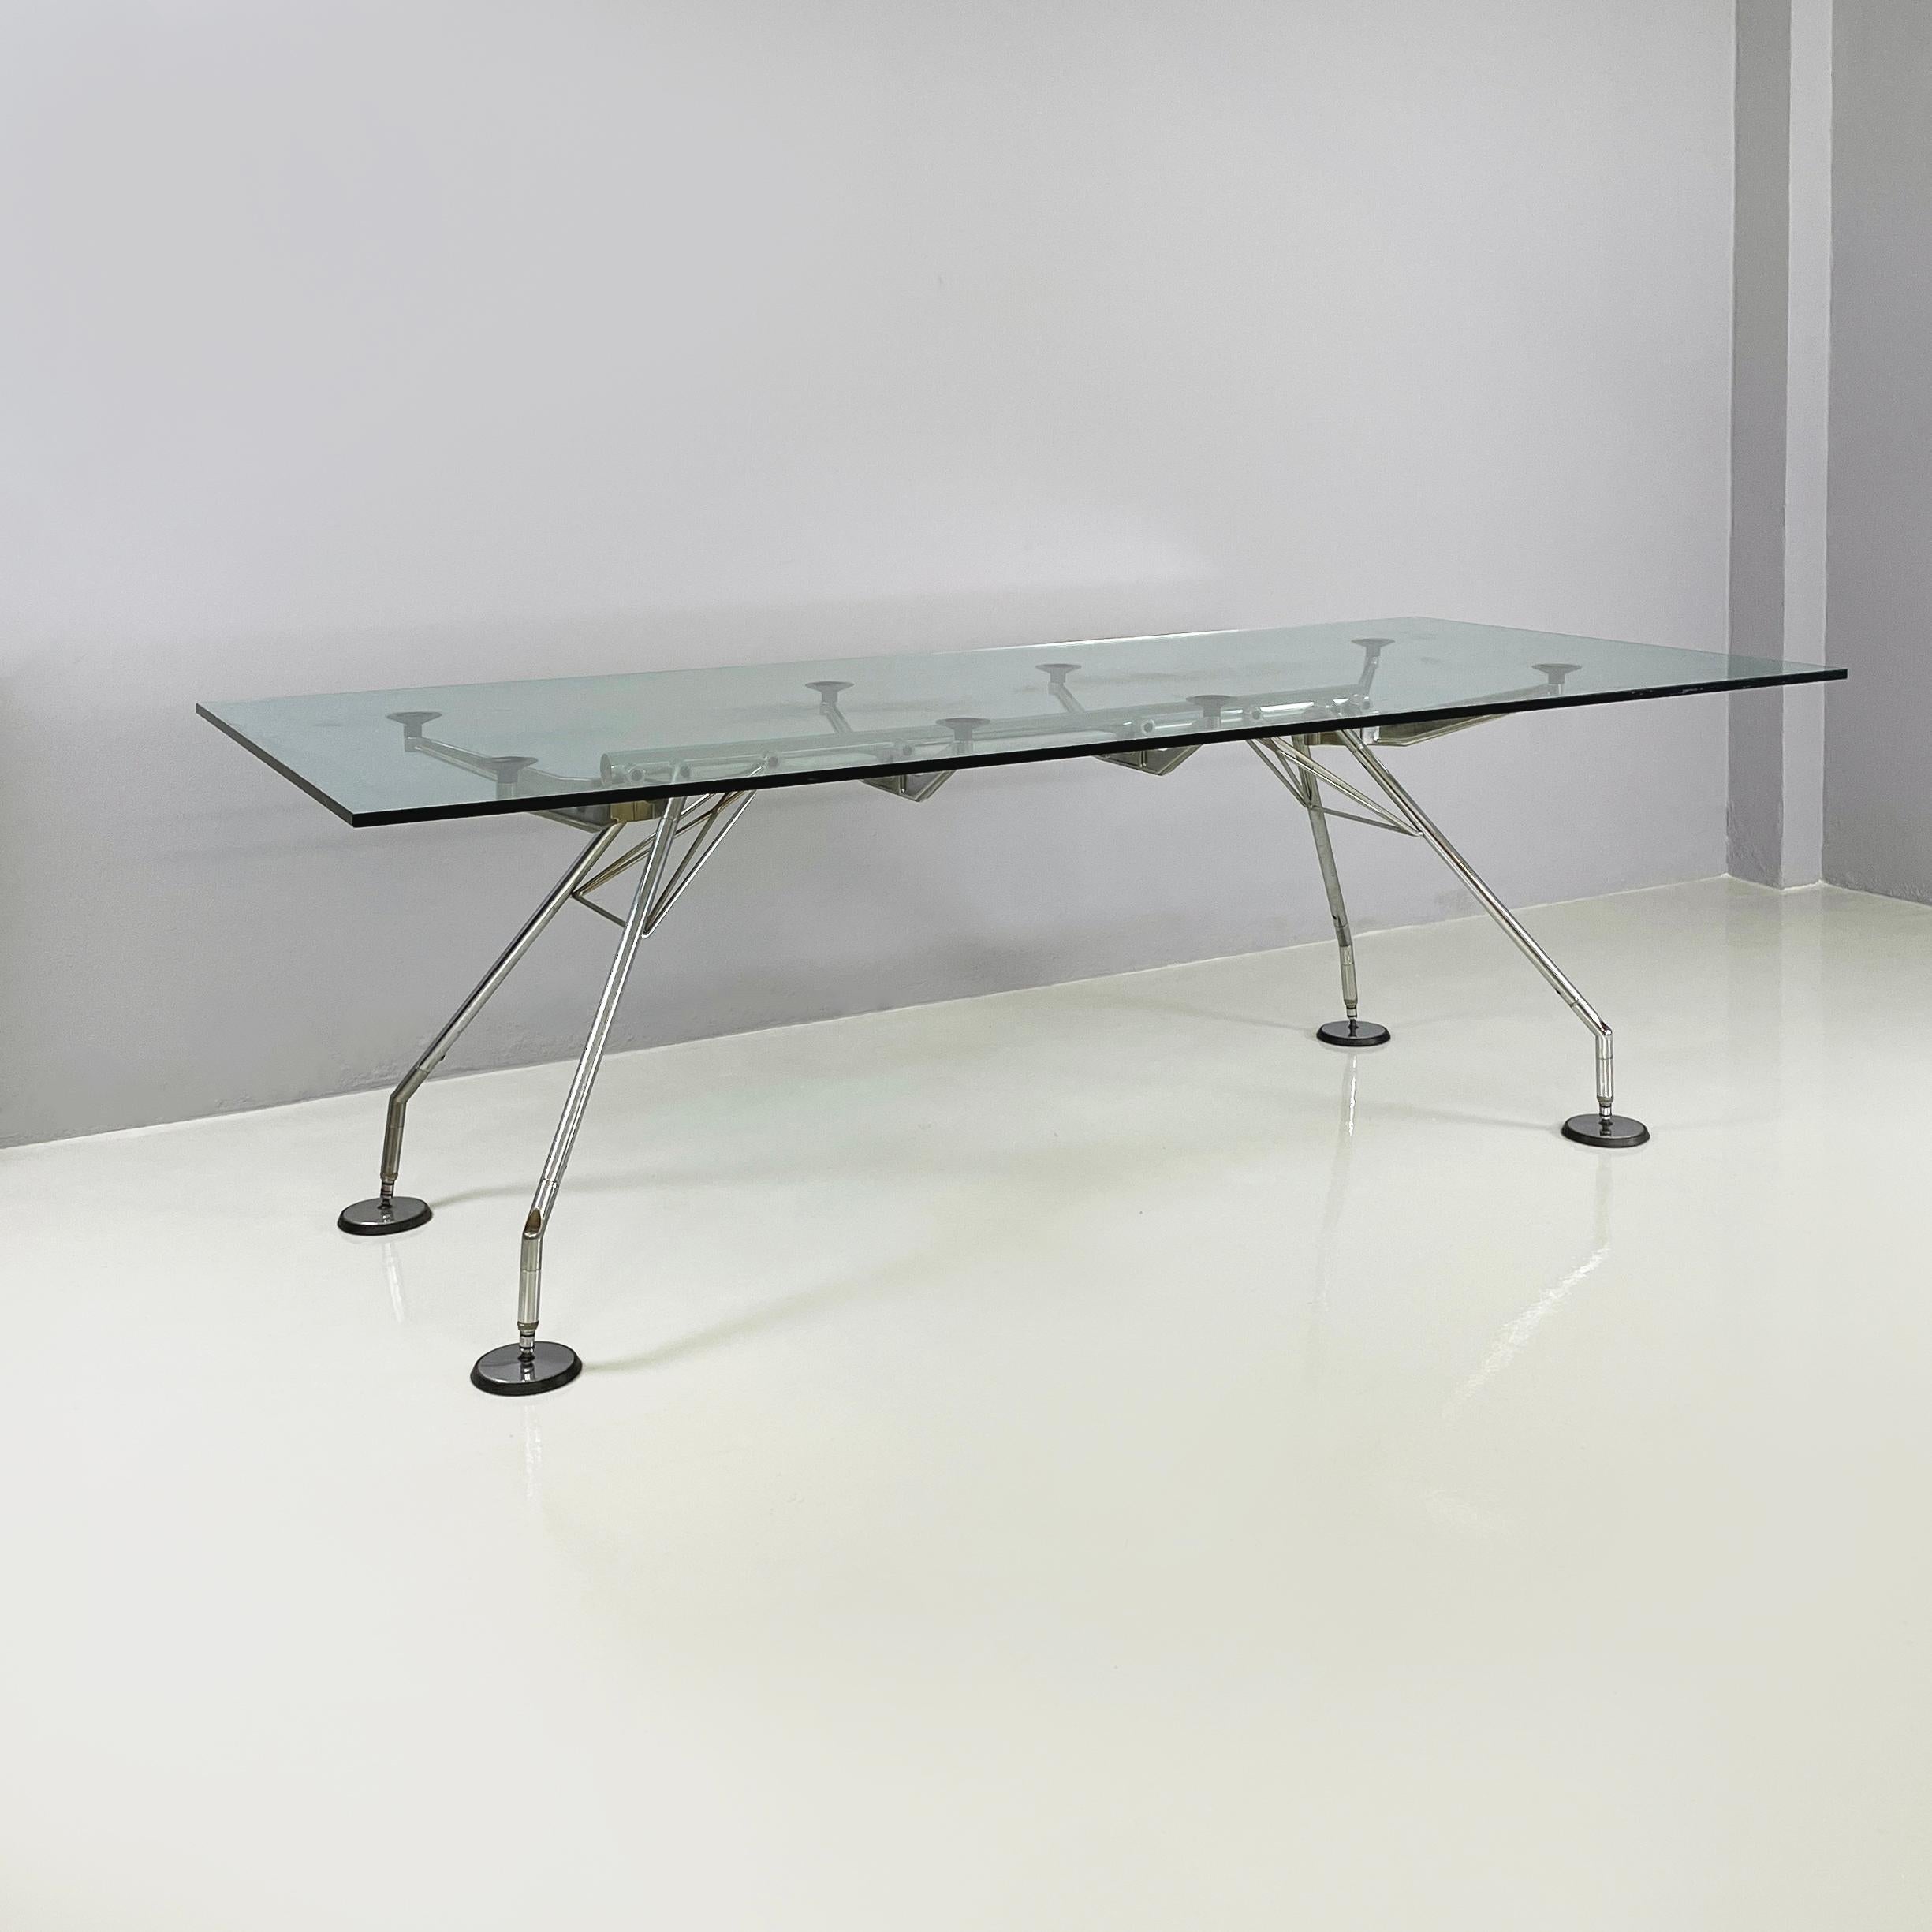 Italienische Moderne Esstisch oder Schreibtisch mod. Nomos von Norman Foster für Tecno, 1970er Jahre
Ikonischer Esstisch Mod. Nomos mit rechteckiger Platte aus dickem Glas. Die Struktur besteht aus verchromtem Stahl mit Stützspitzen und runden und